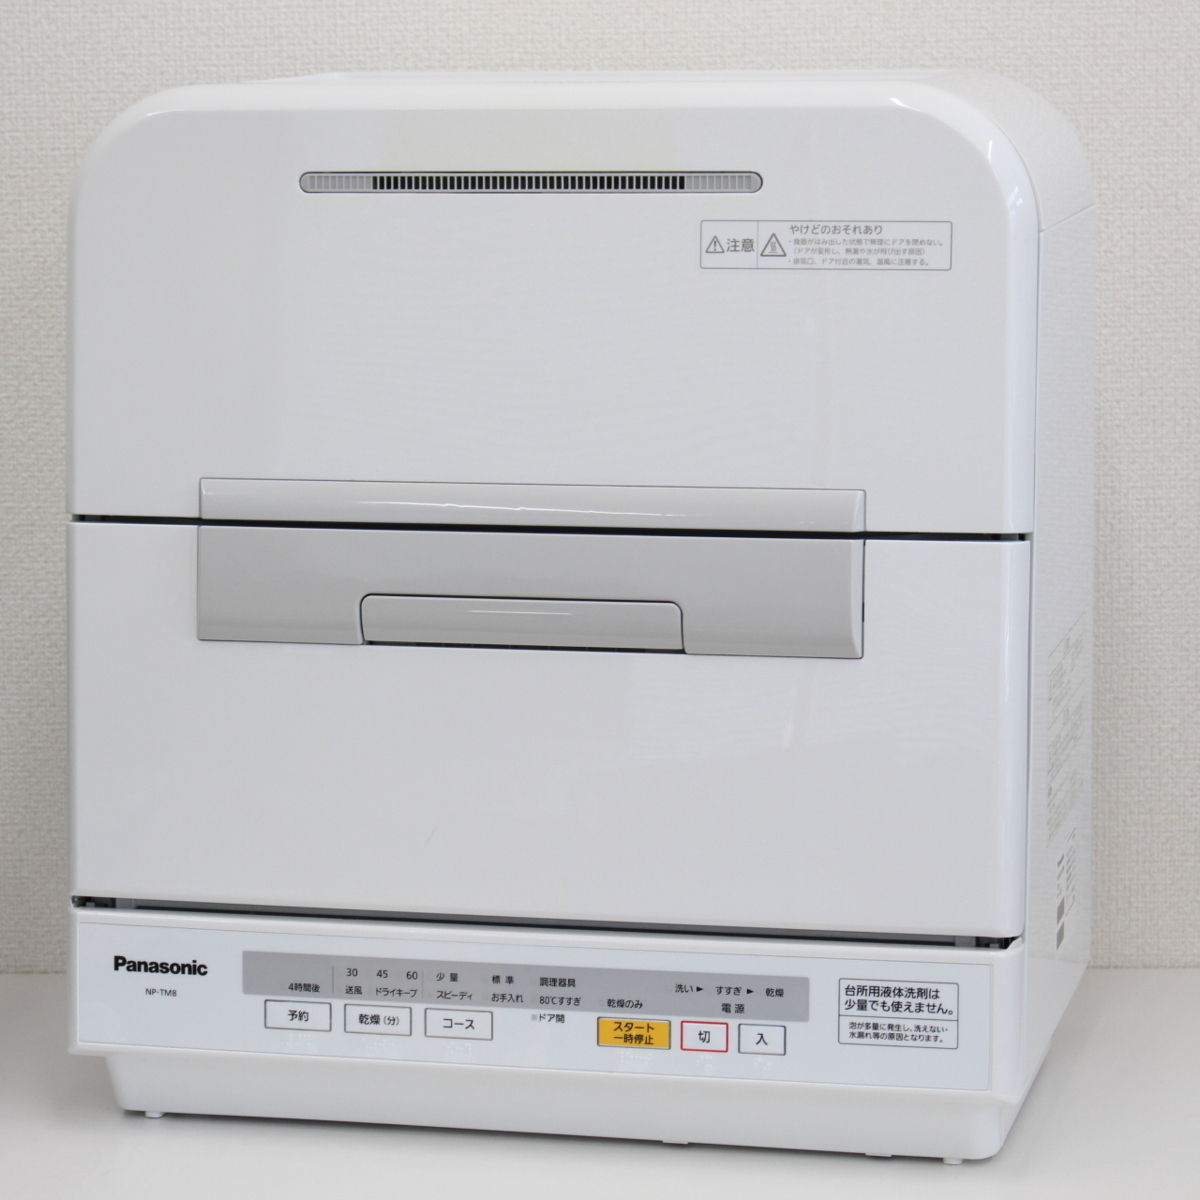 横浜市泉区にて パナソニック 食器洗い乾燥機 NP-TM8 2015年製 を出張買取させて頂きました。